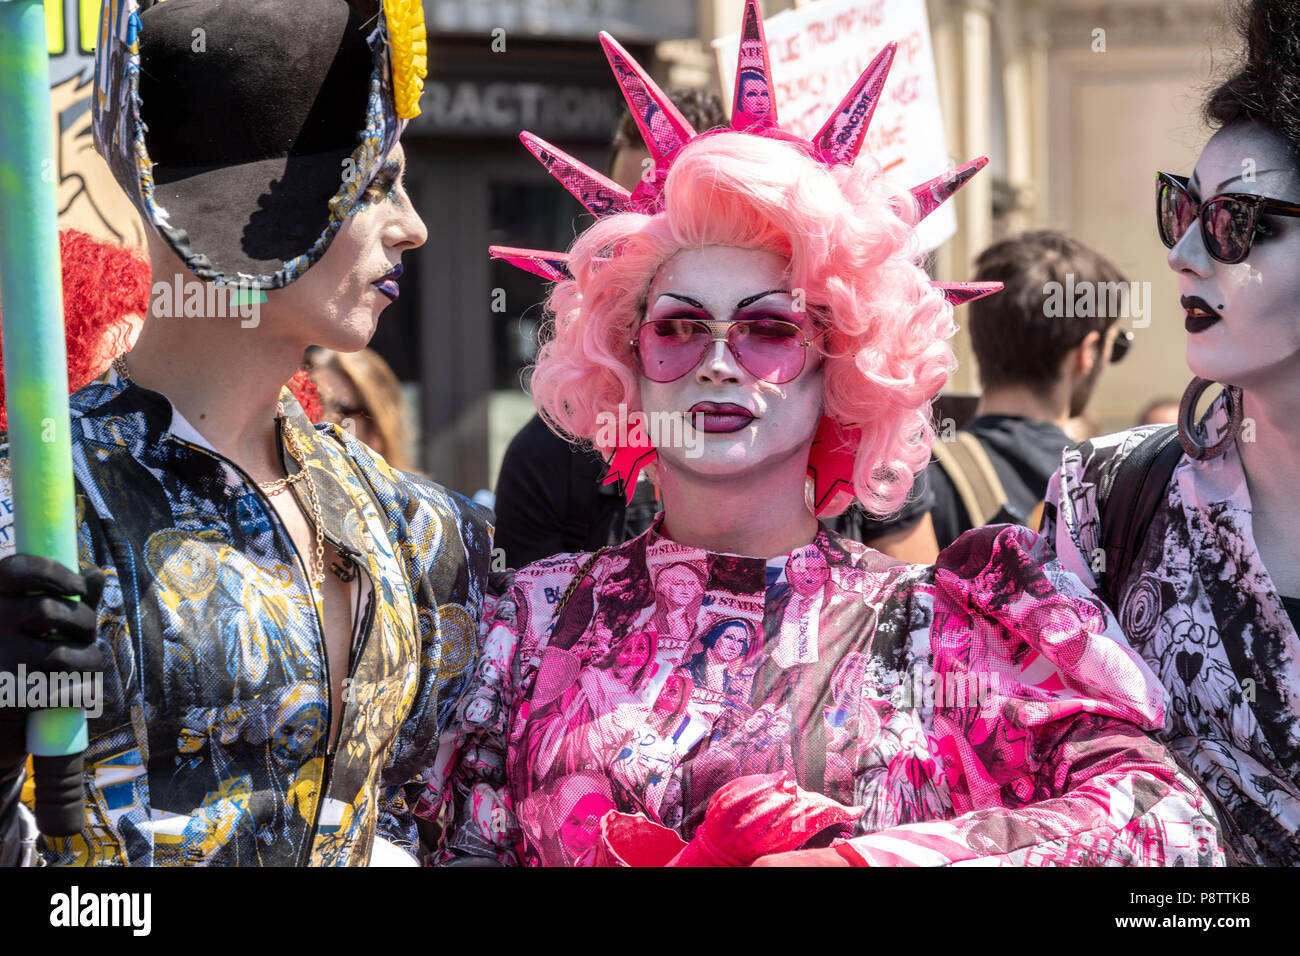 Londres, le 13 Juillet 2018 Mars femme -Mettre l'anti bruit une petite démonstration d'atout de drag queens mars rejoint la parade principale Ian Davidson Crédit/Alamy Live News Banque D'Images